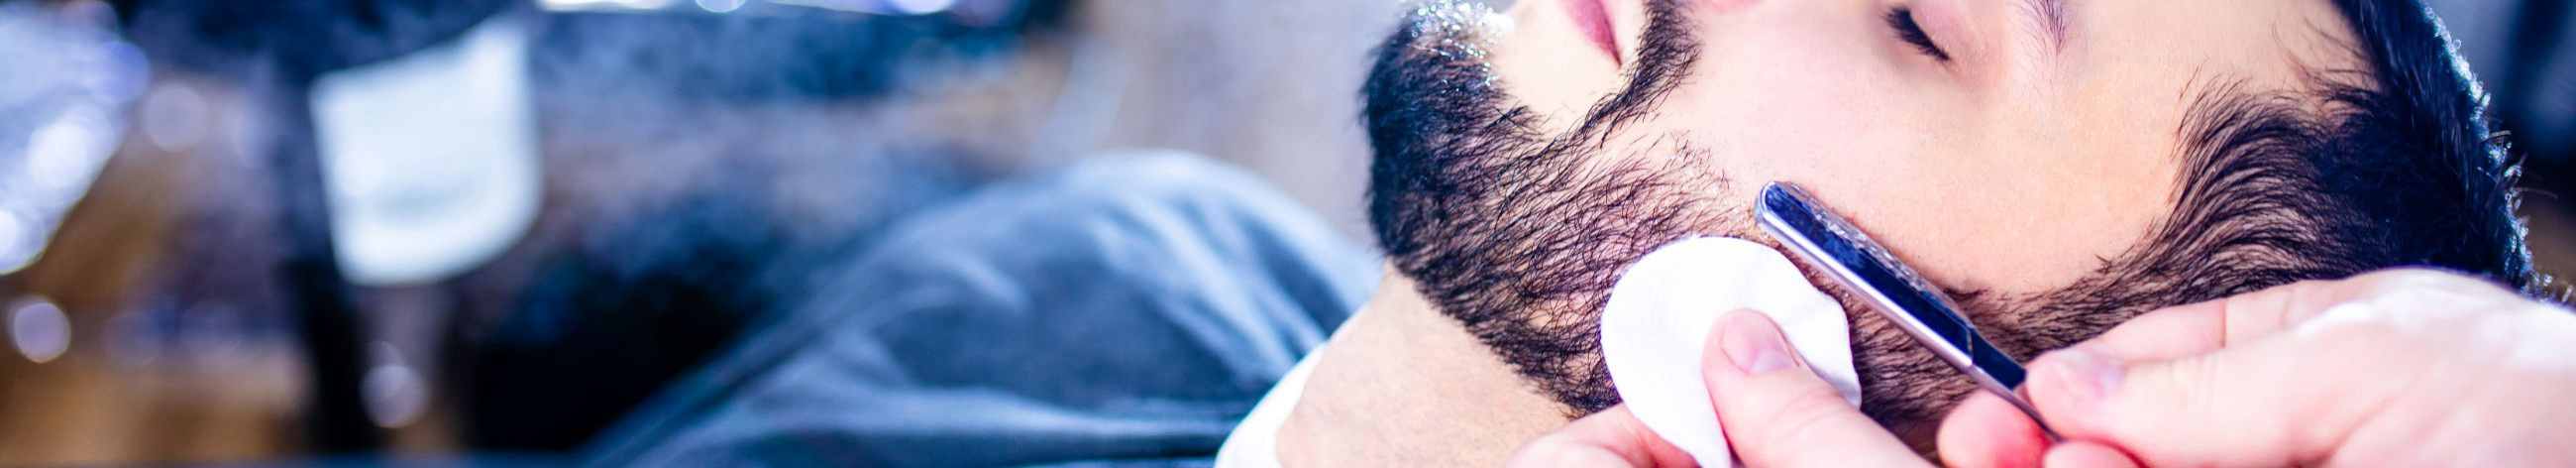 Tegeleme stiilse meestegroominguga, pakkudes kõrgtasemel juukselõikust, habemeajamist, vuntside ja habeme kujundamist ning individuaalset nõustamist ja hooldusteenuseid.